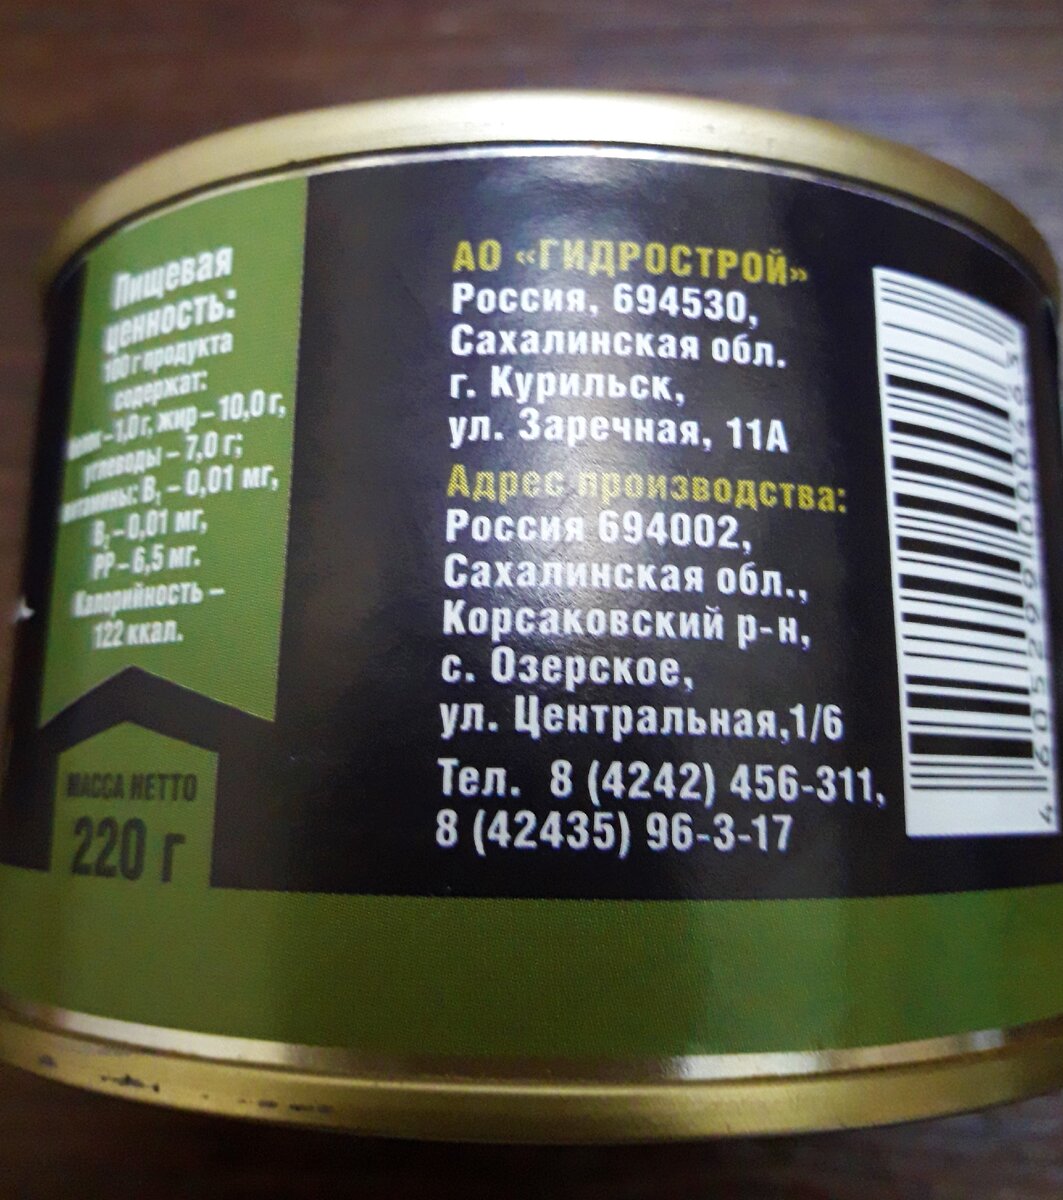 В Магнит привезли Сахалинский салат из морской капусты за 49 руб. 99 коп., купила и показываю, что внутри банки,(люди…